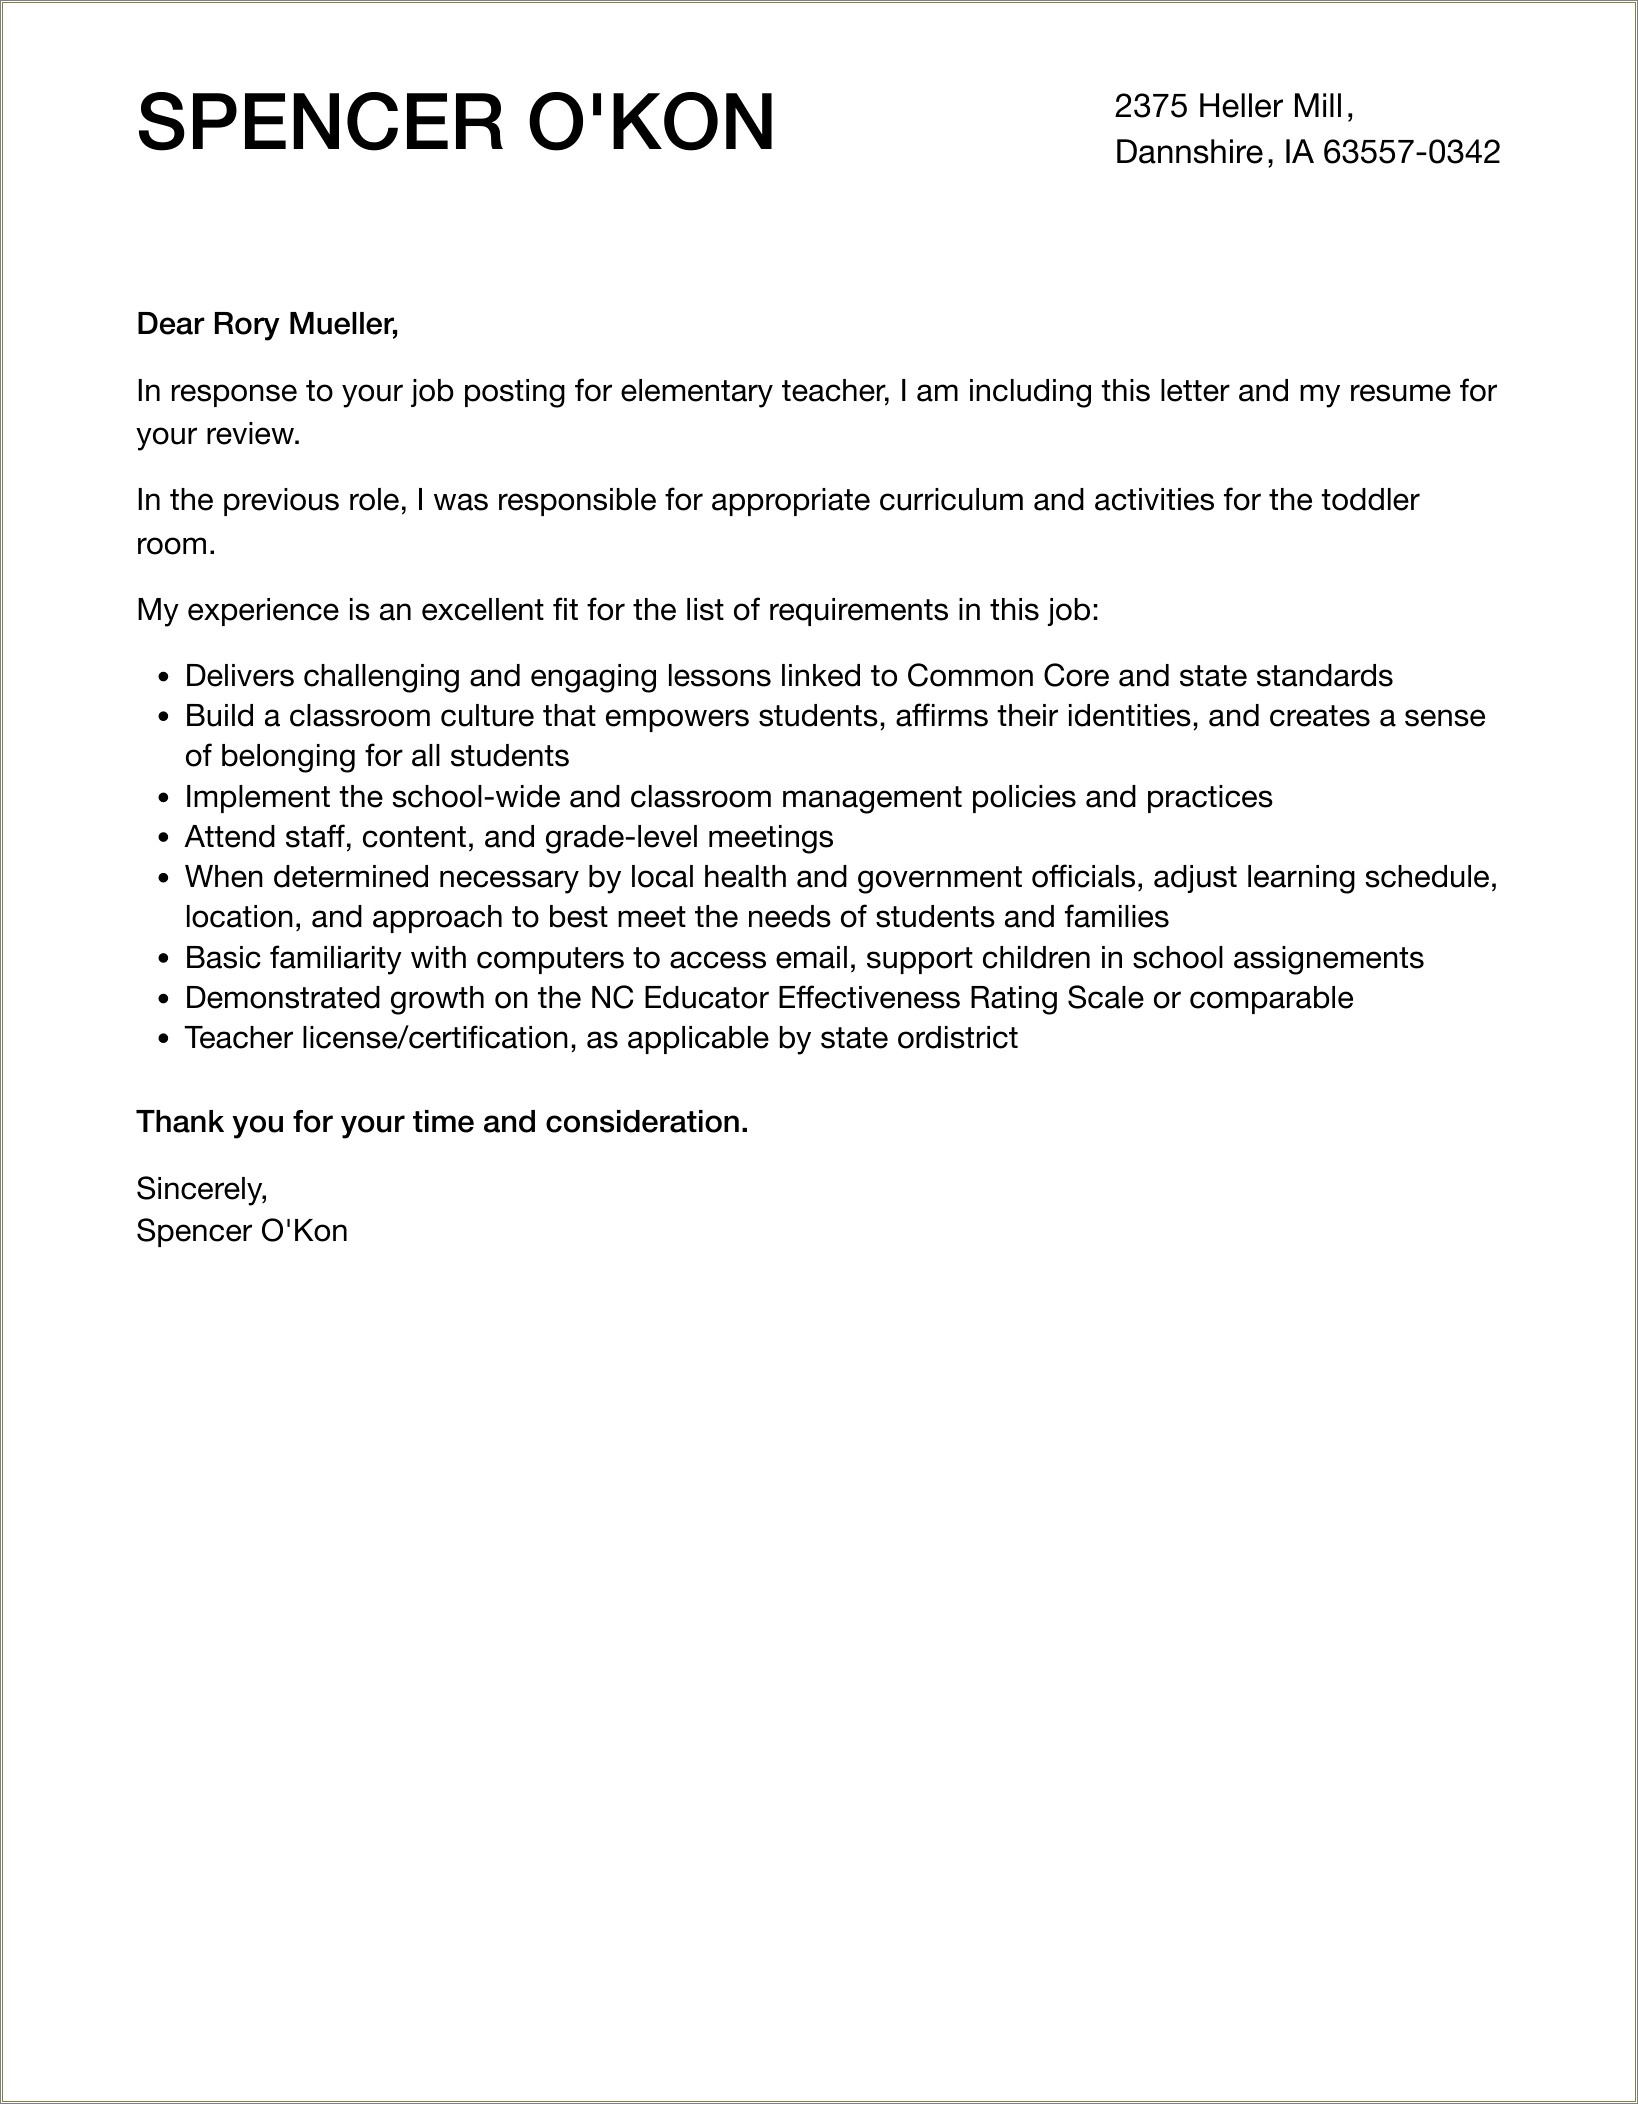 Resume And Cover Letter For Elemetnary School Teacher